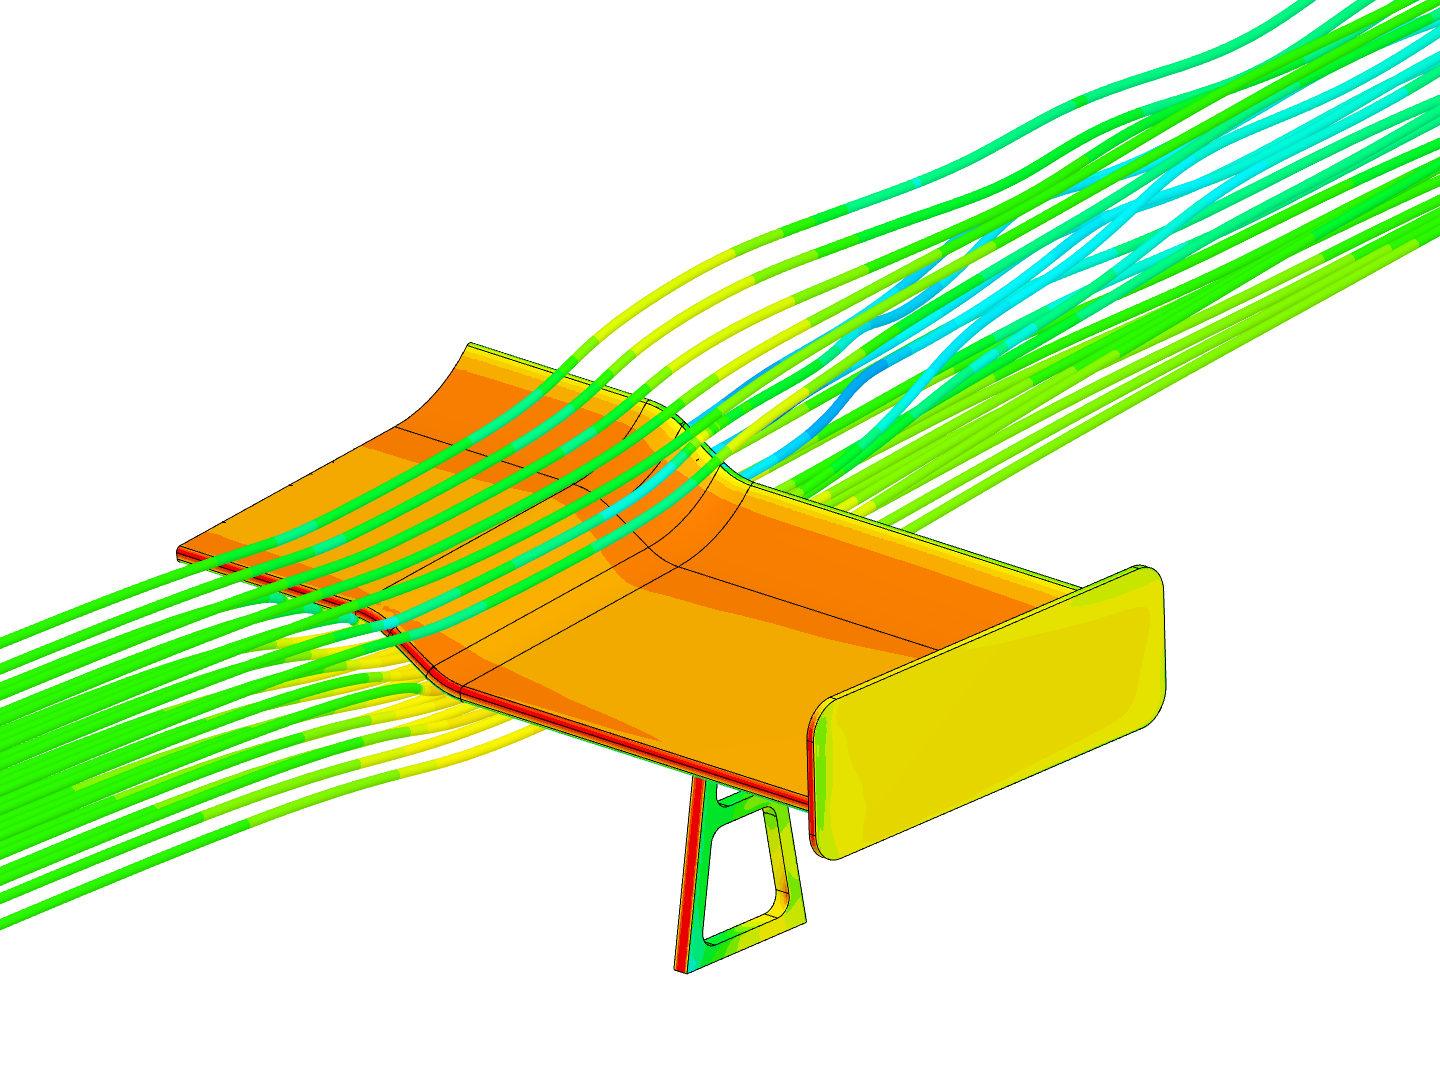 Airflow around spoiler - CFD simulation image